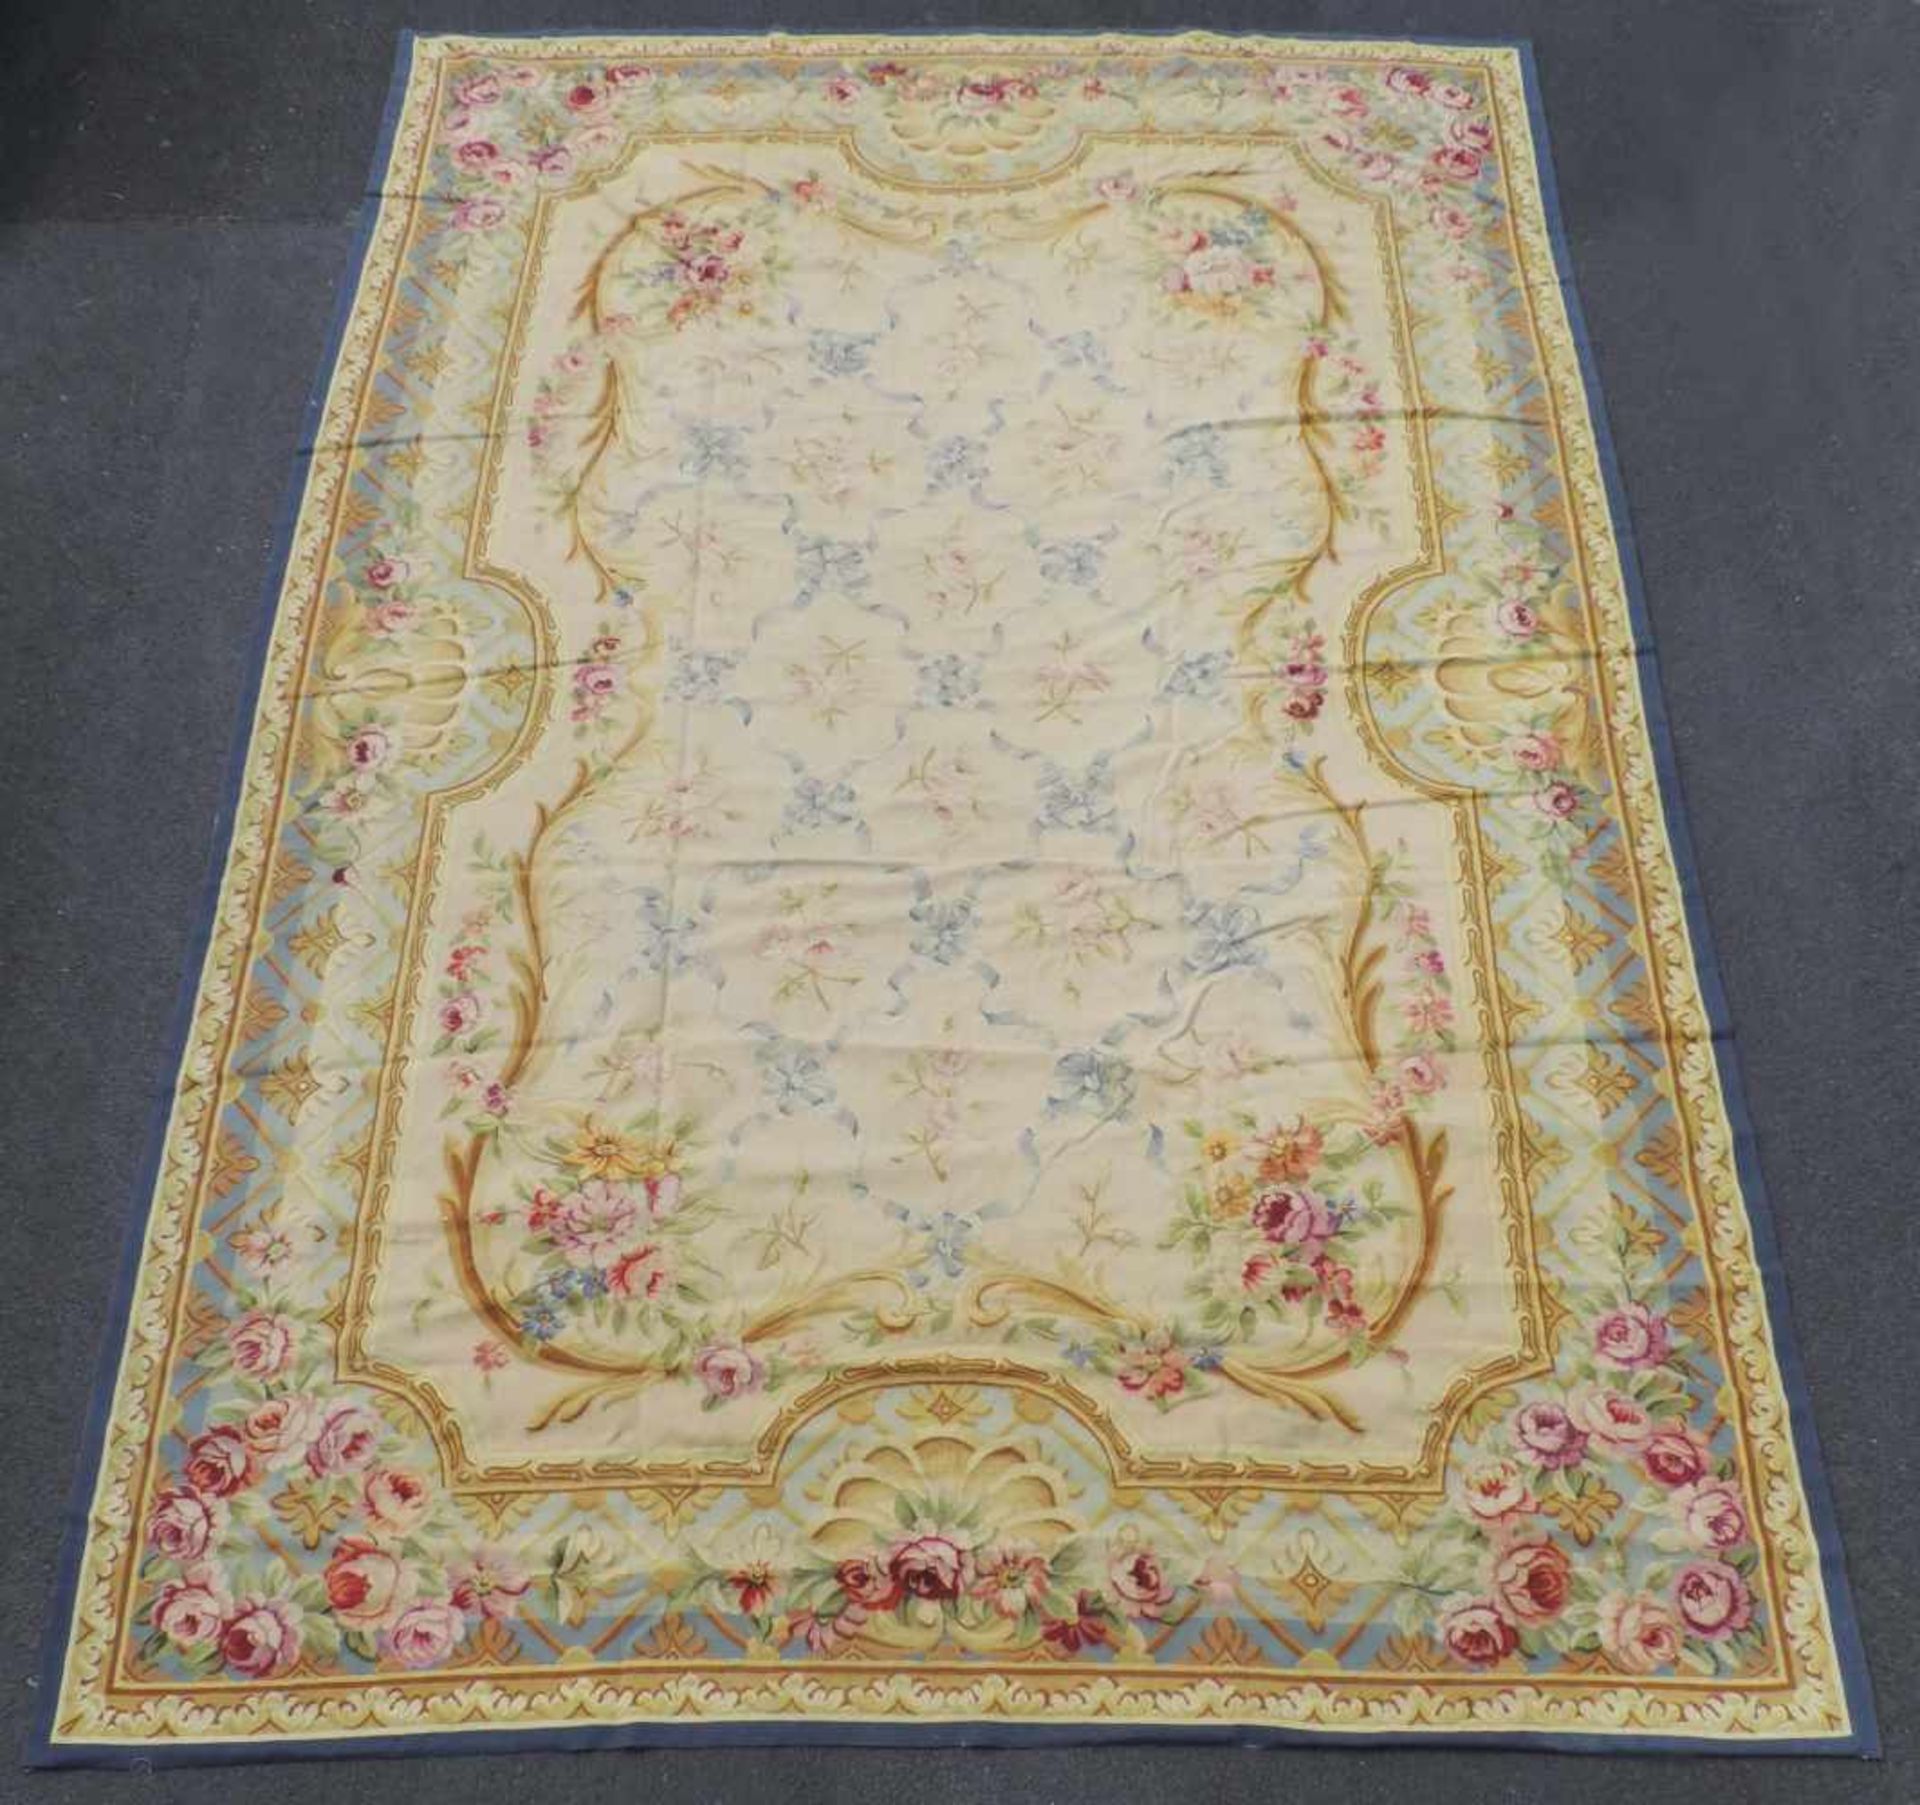 Tapis de Pied. Carpet in Louis XIV. Aubusson style.